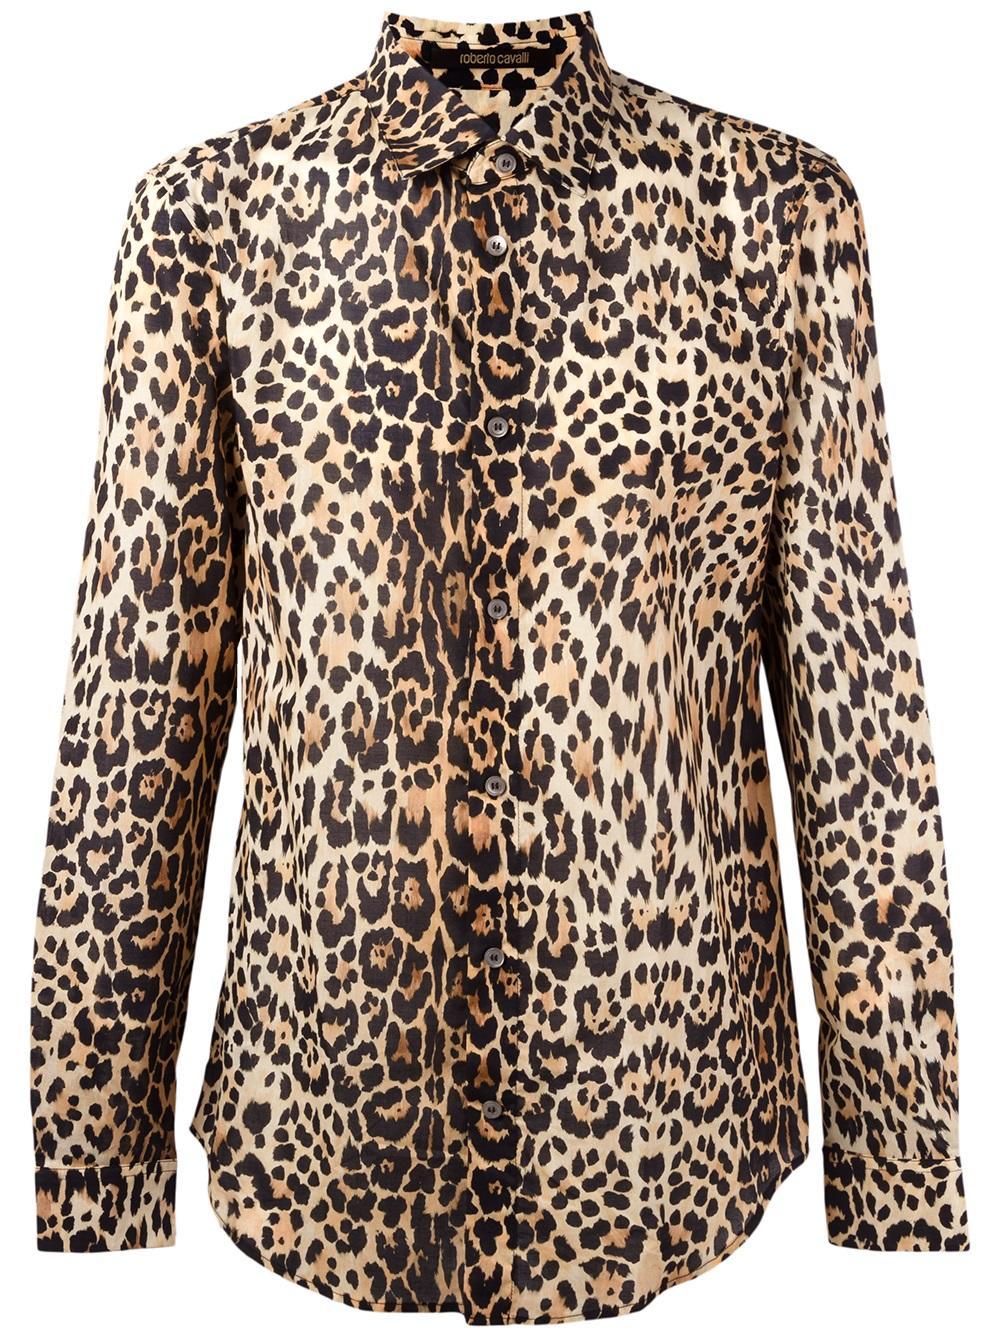 Lyst - Roberto Cavalli Leopard Print Shirt